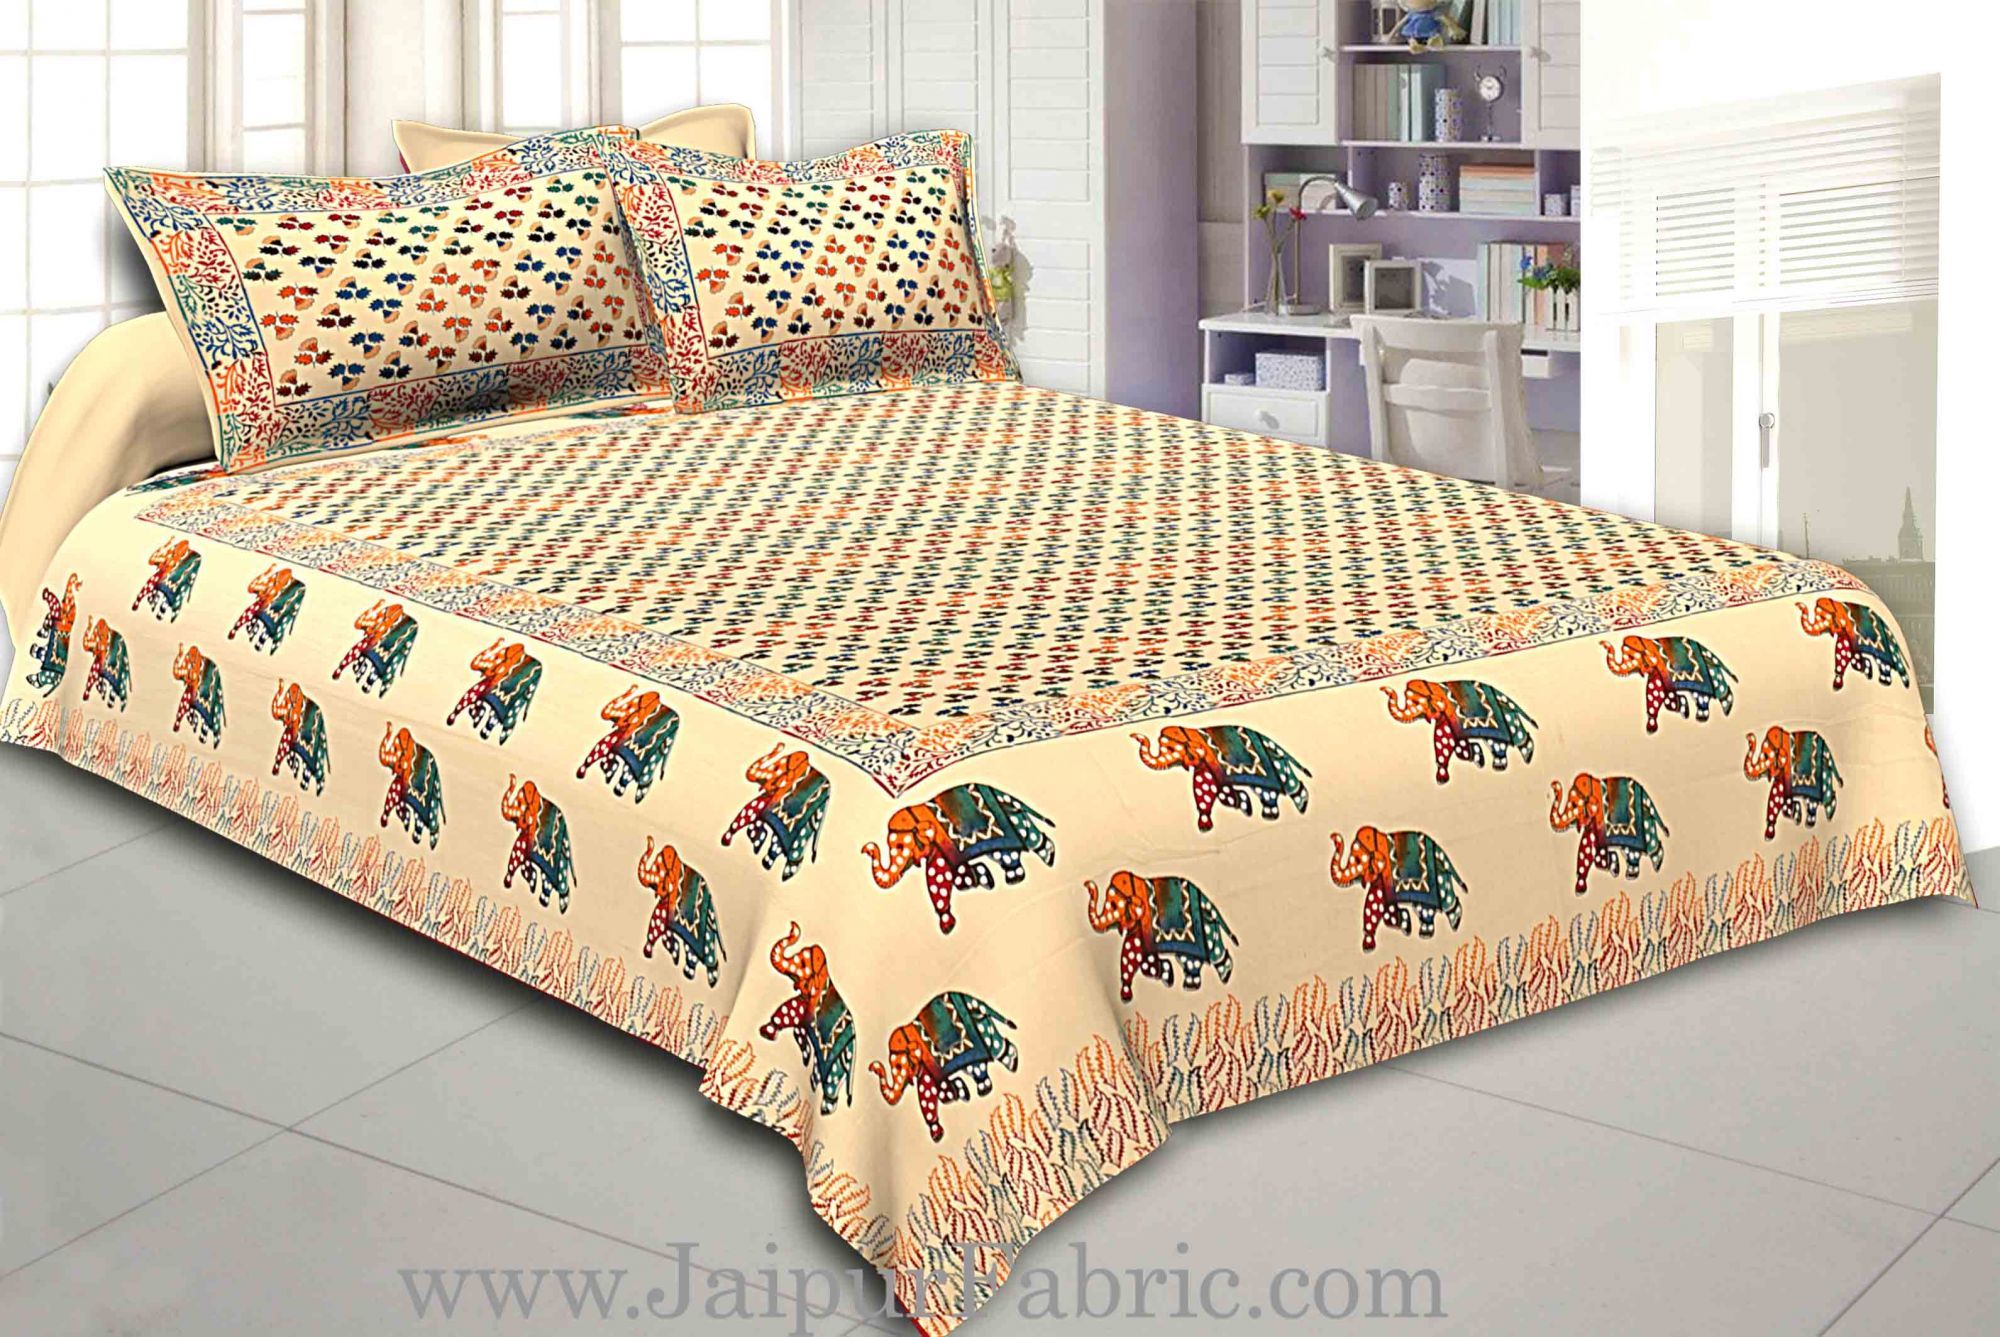 Jaipur Razai Double Bed With Satrangi Elephant Pattern Combo Pack